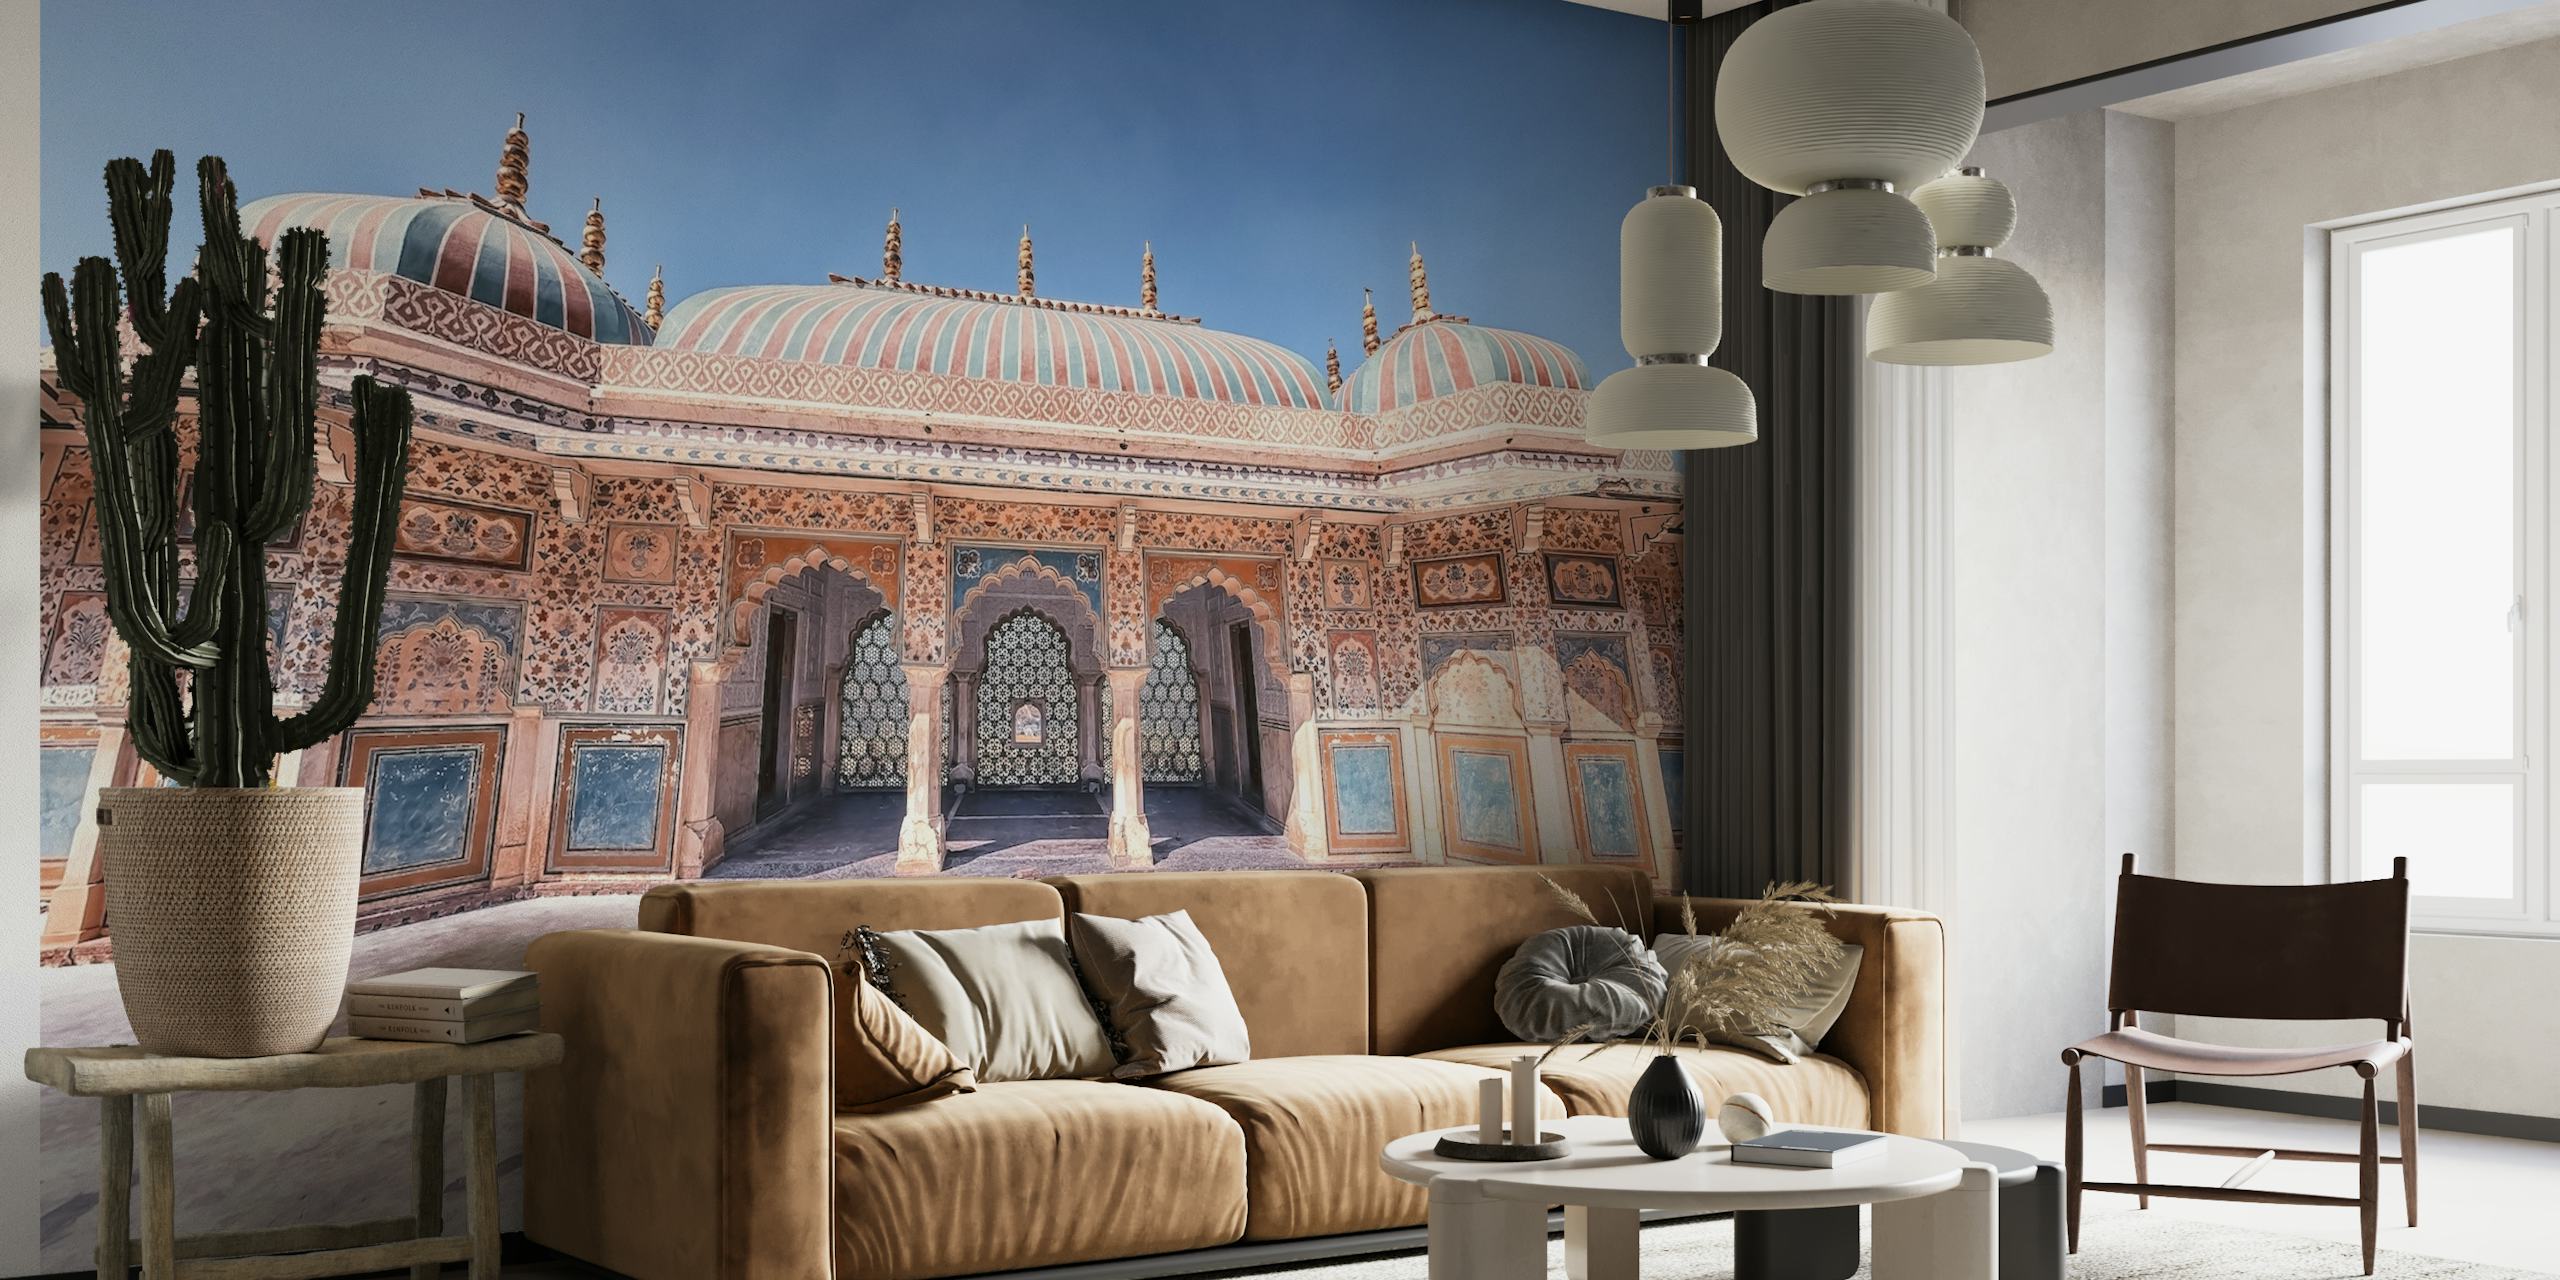 Mural del Fuerte Amber que representa la majestuosa arquitectura india y los intrincados detalles del palacio